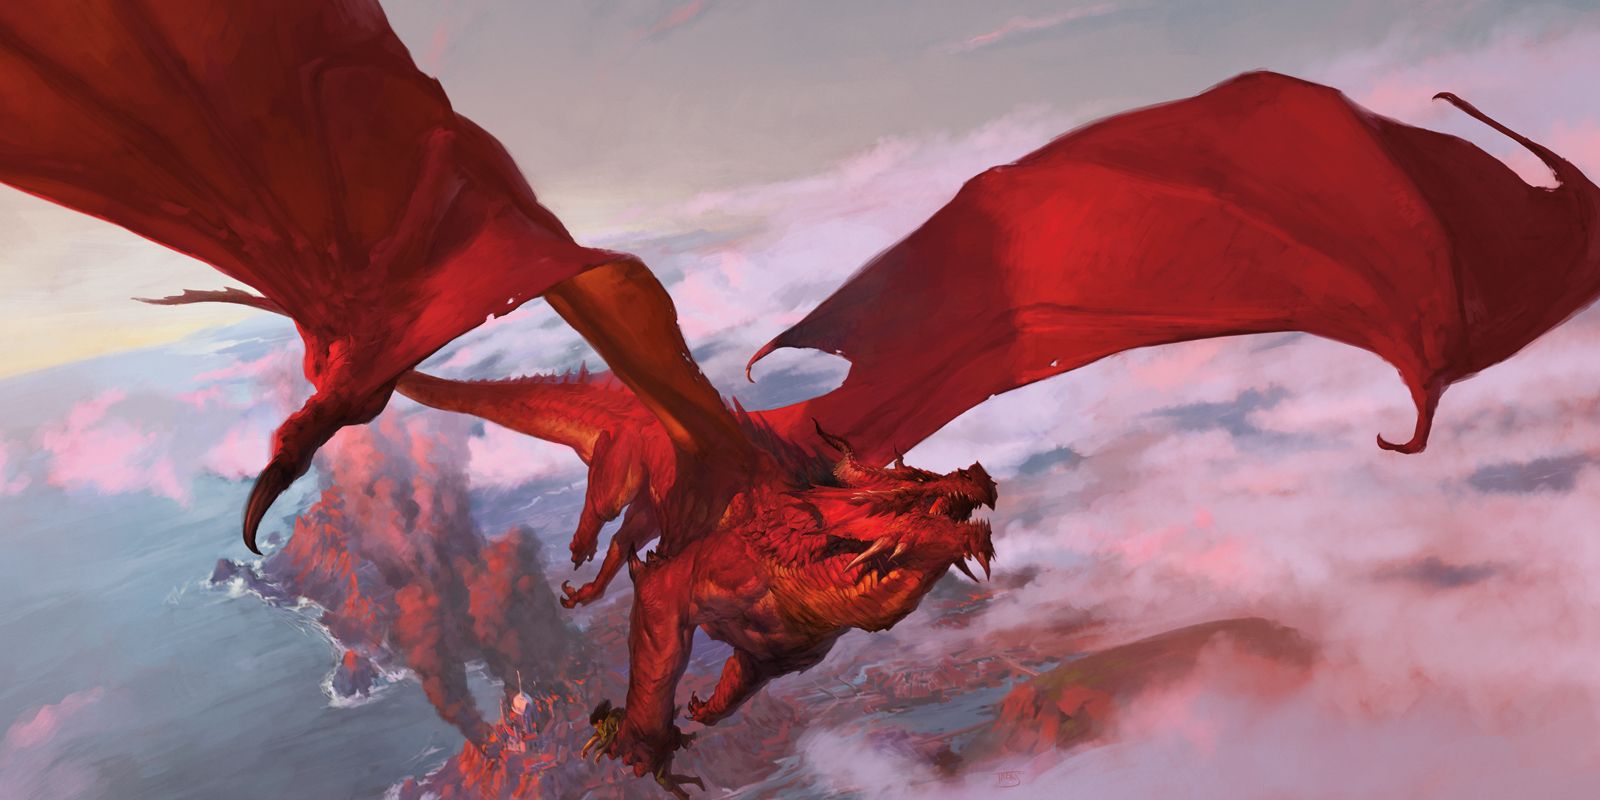 Chris Pine recebeu 11.5 milhões de dolares pelo filme Dungeons & Dragons (Caverna do Dragão) 1